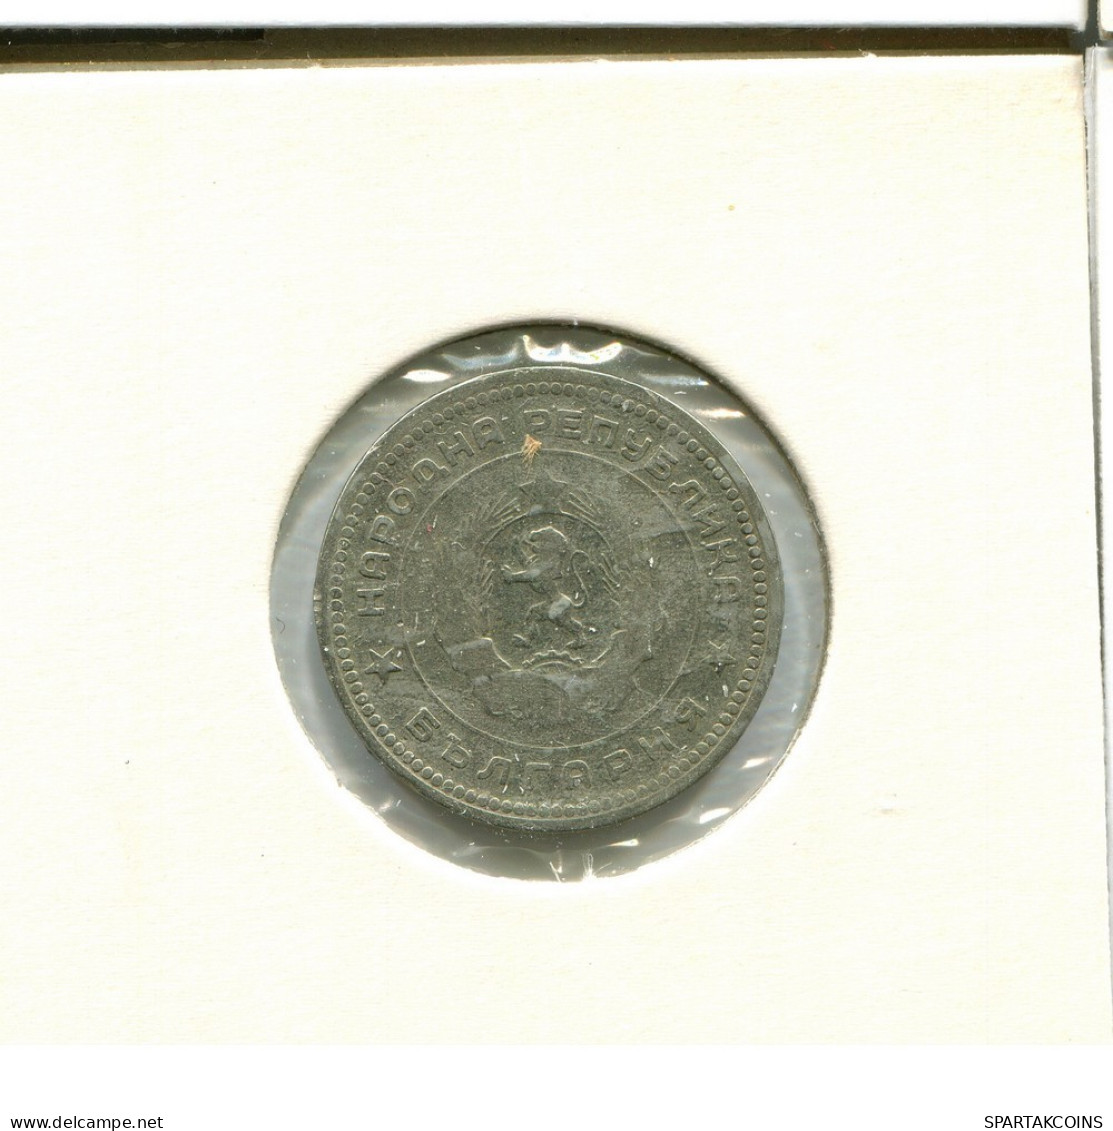 20 STOTINKI 1962 BULGARIA Coin #AU762.U.A - Bulgaria